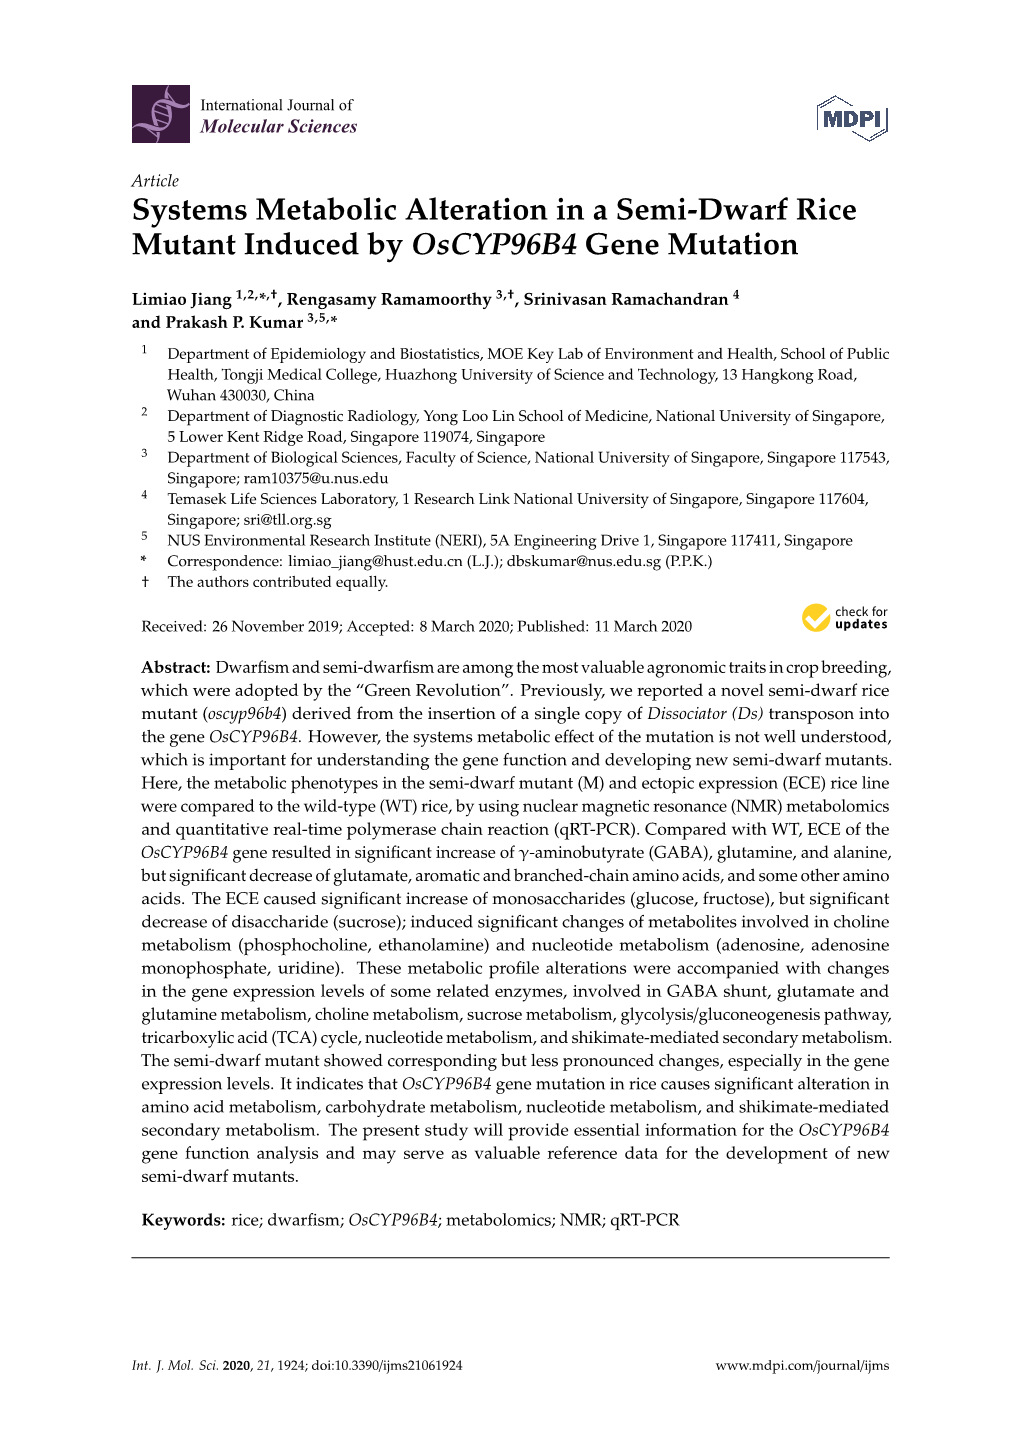 Systems Metabolic Alteration in a Semi-Dwarf Rice Mutant Induced by Oscyp96b4 Gene Mutation